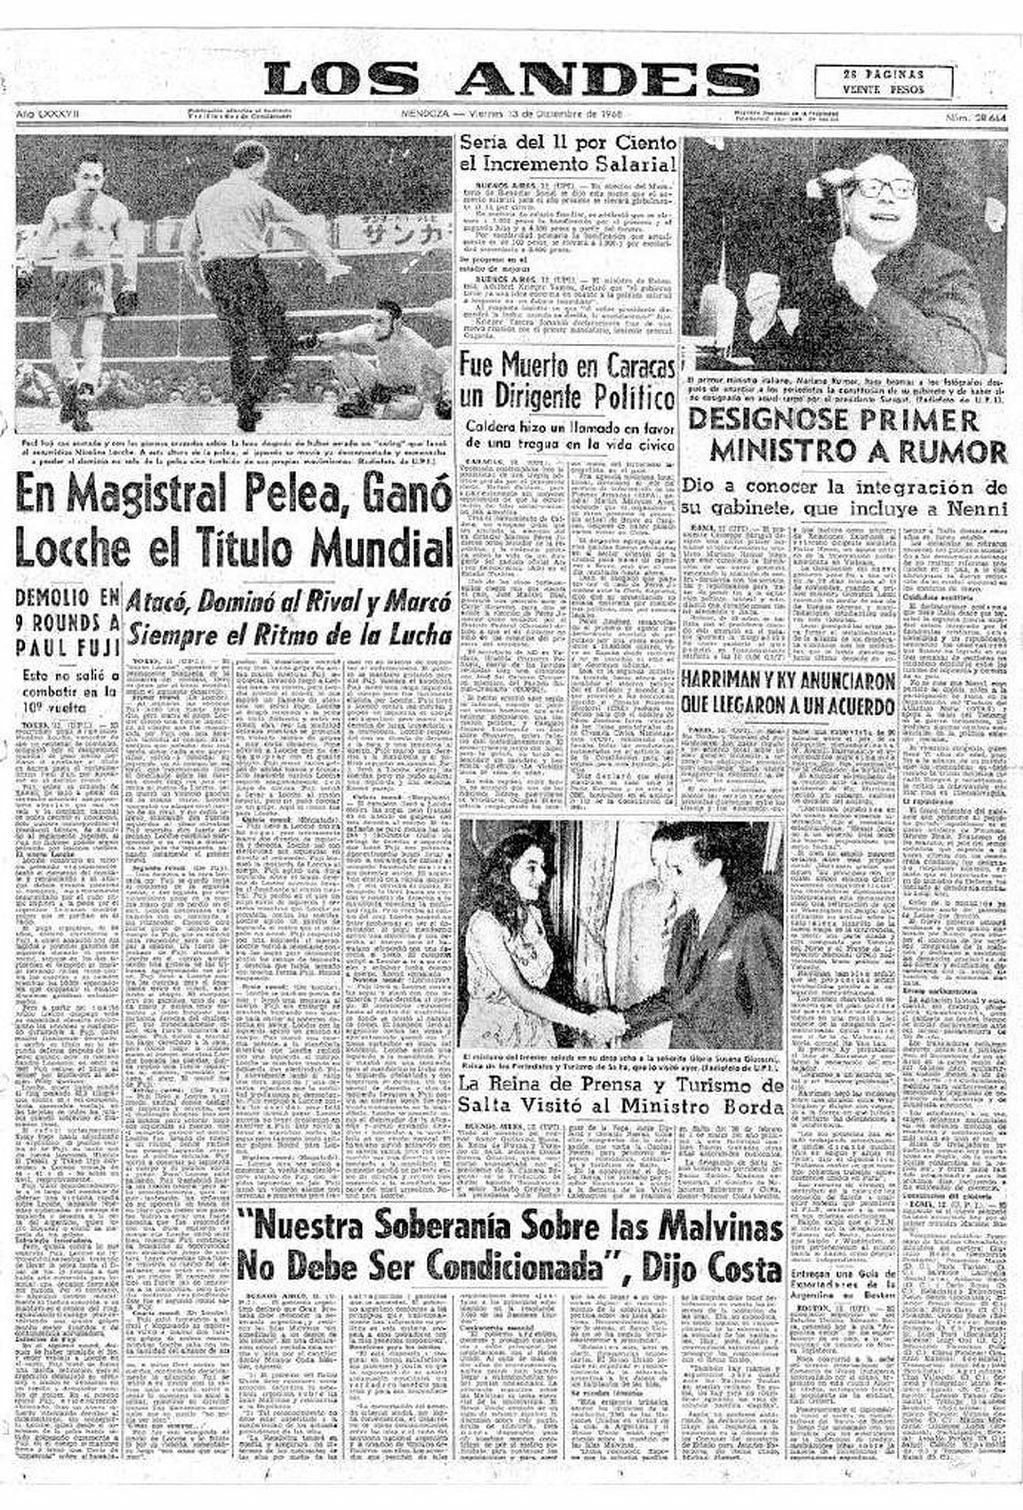 
    Los Andes informó la noticia del triunfo de Nicolino.
   